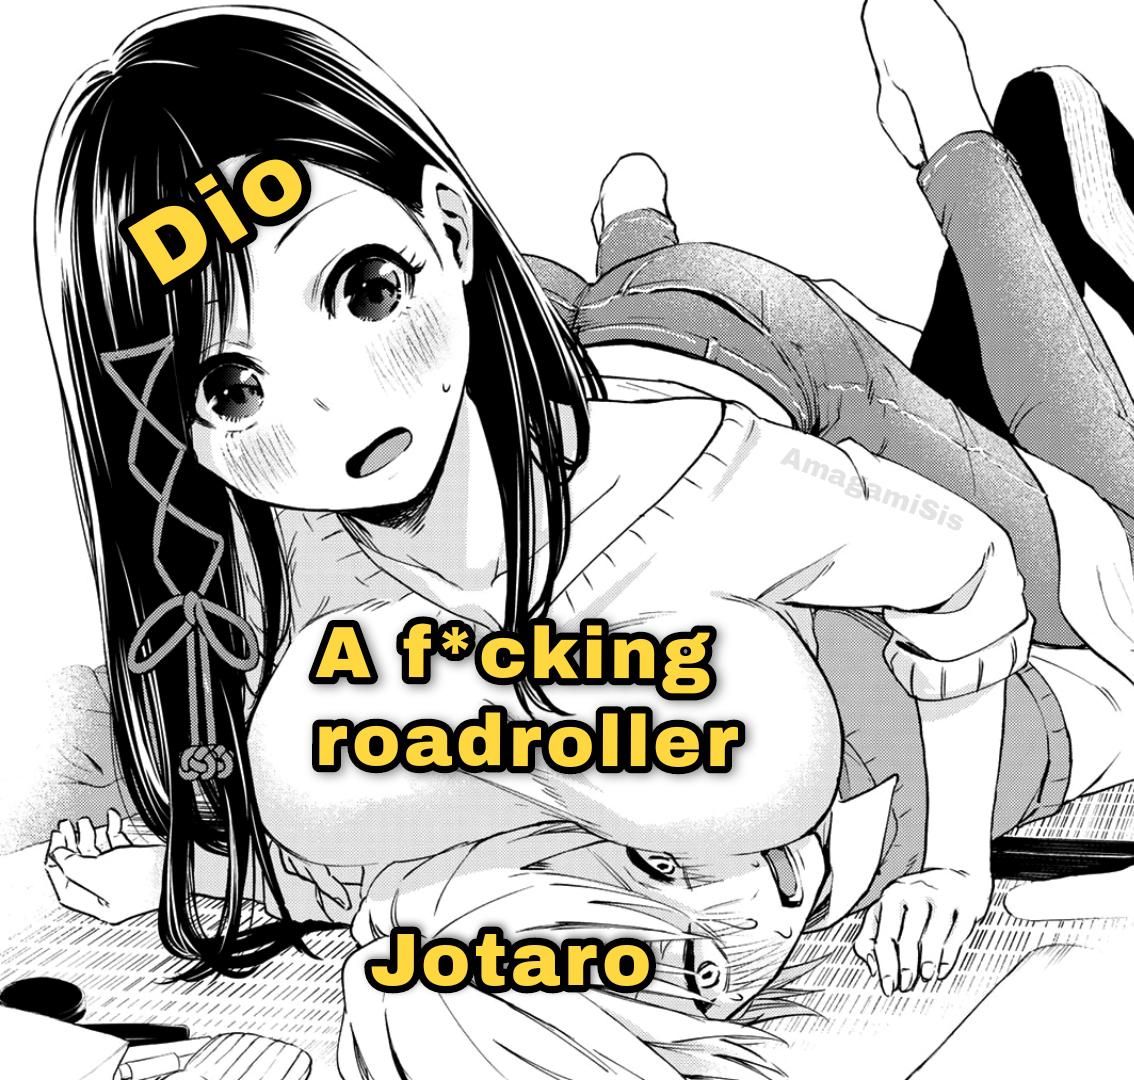 Get smashed Jotaro